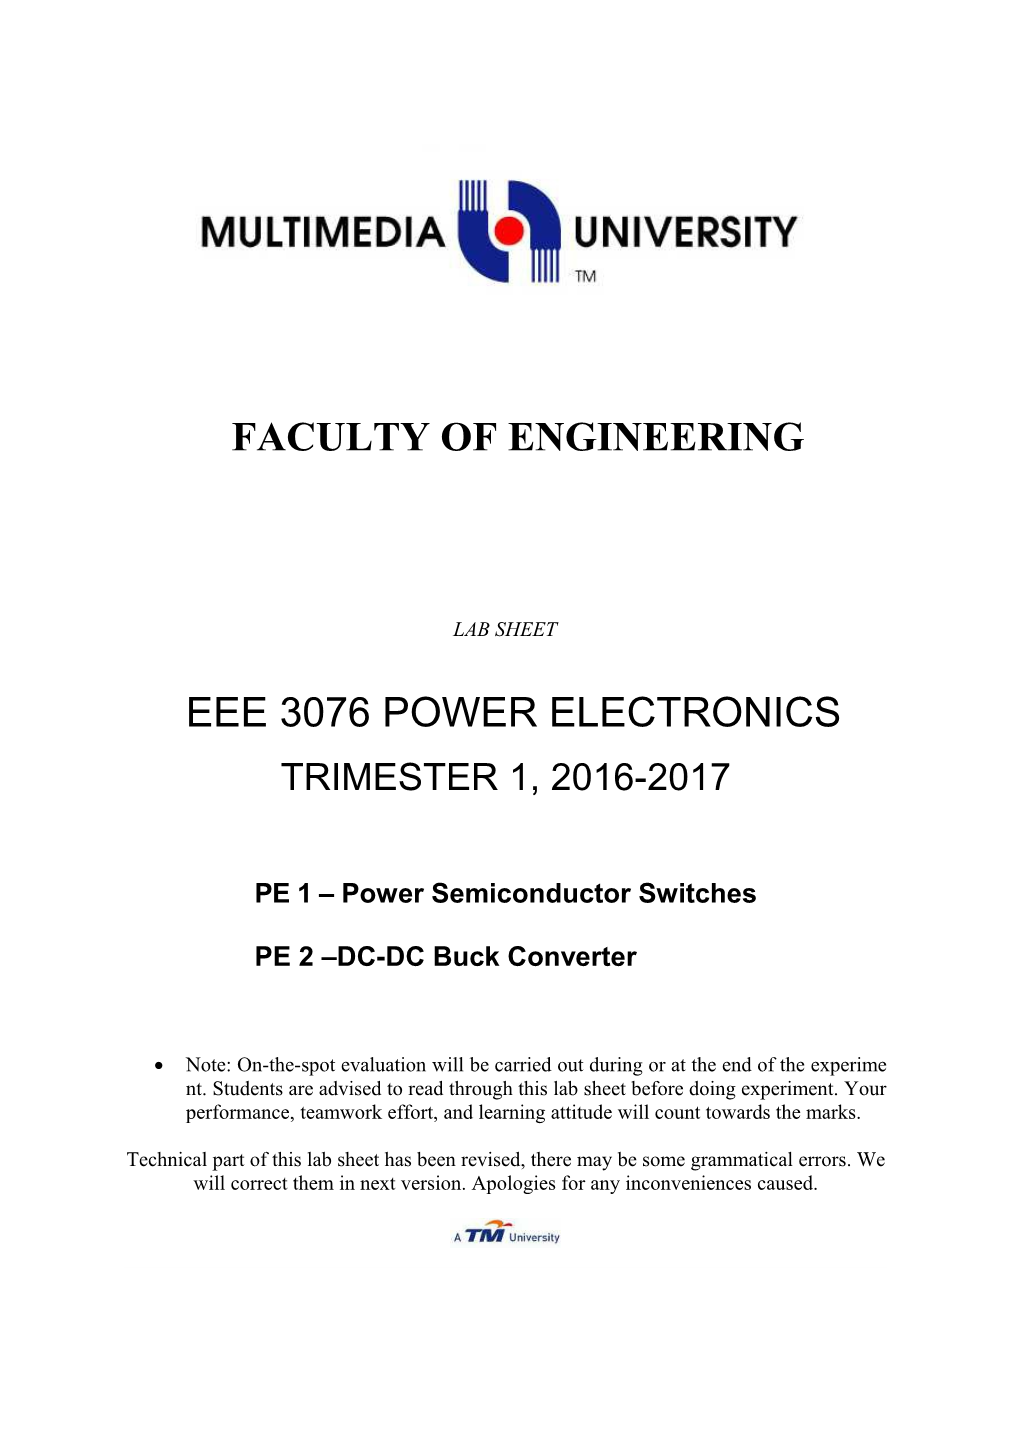 EEE3076 Power Electronics: PE1 & PE2 2016/2017